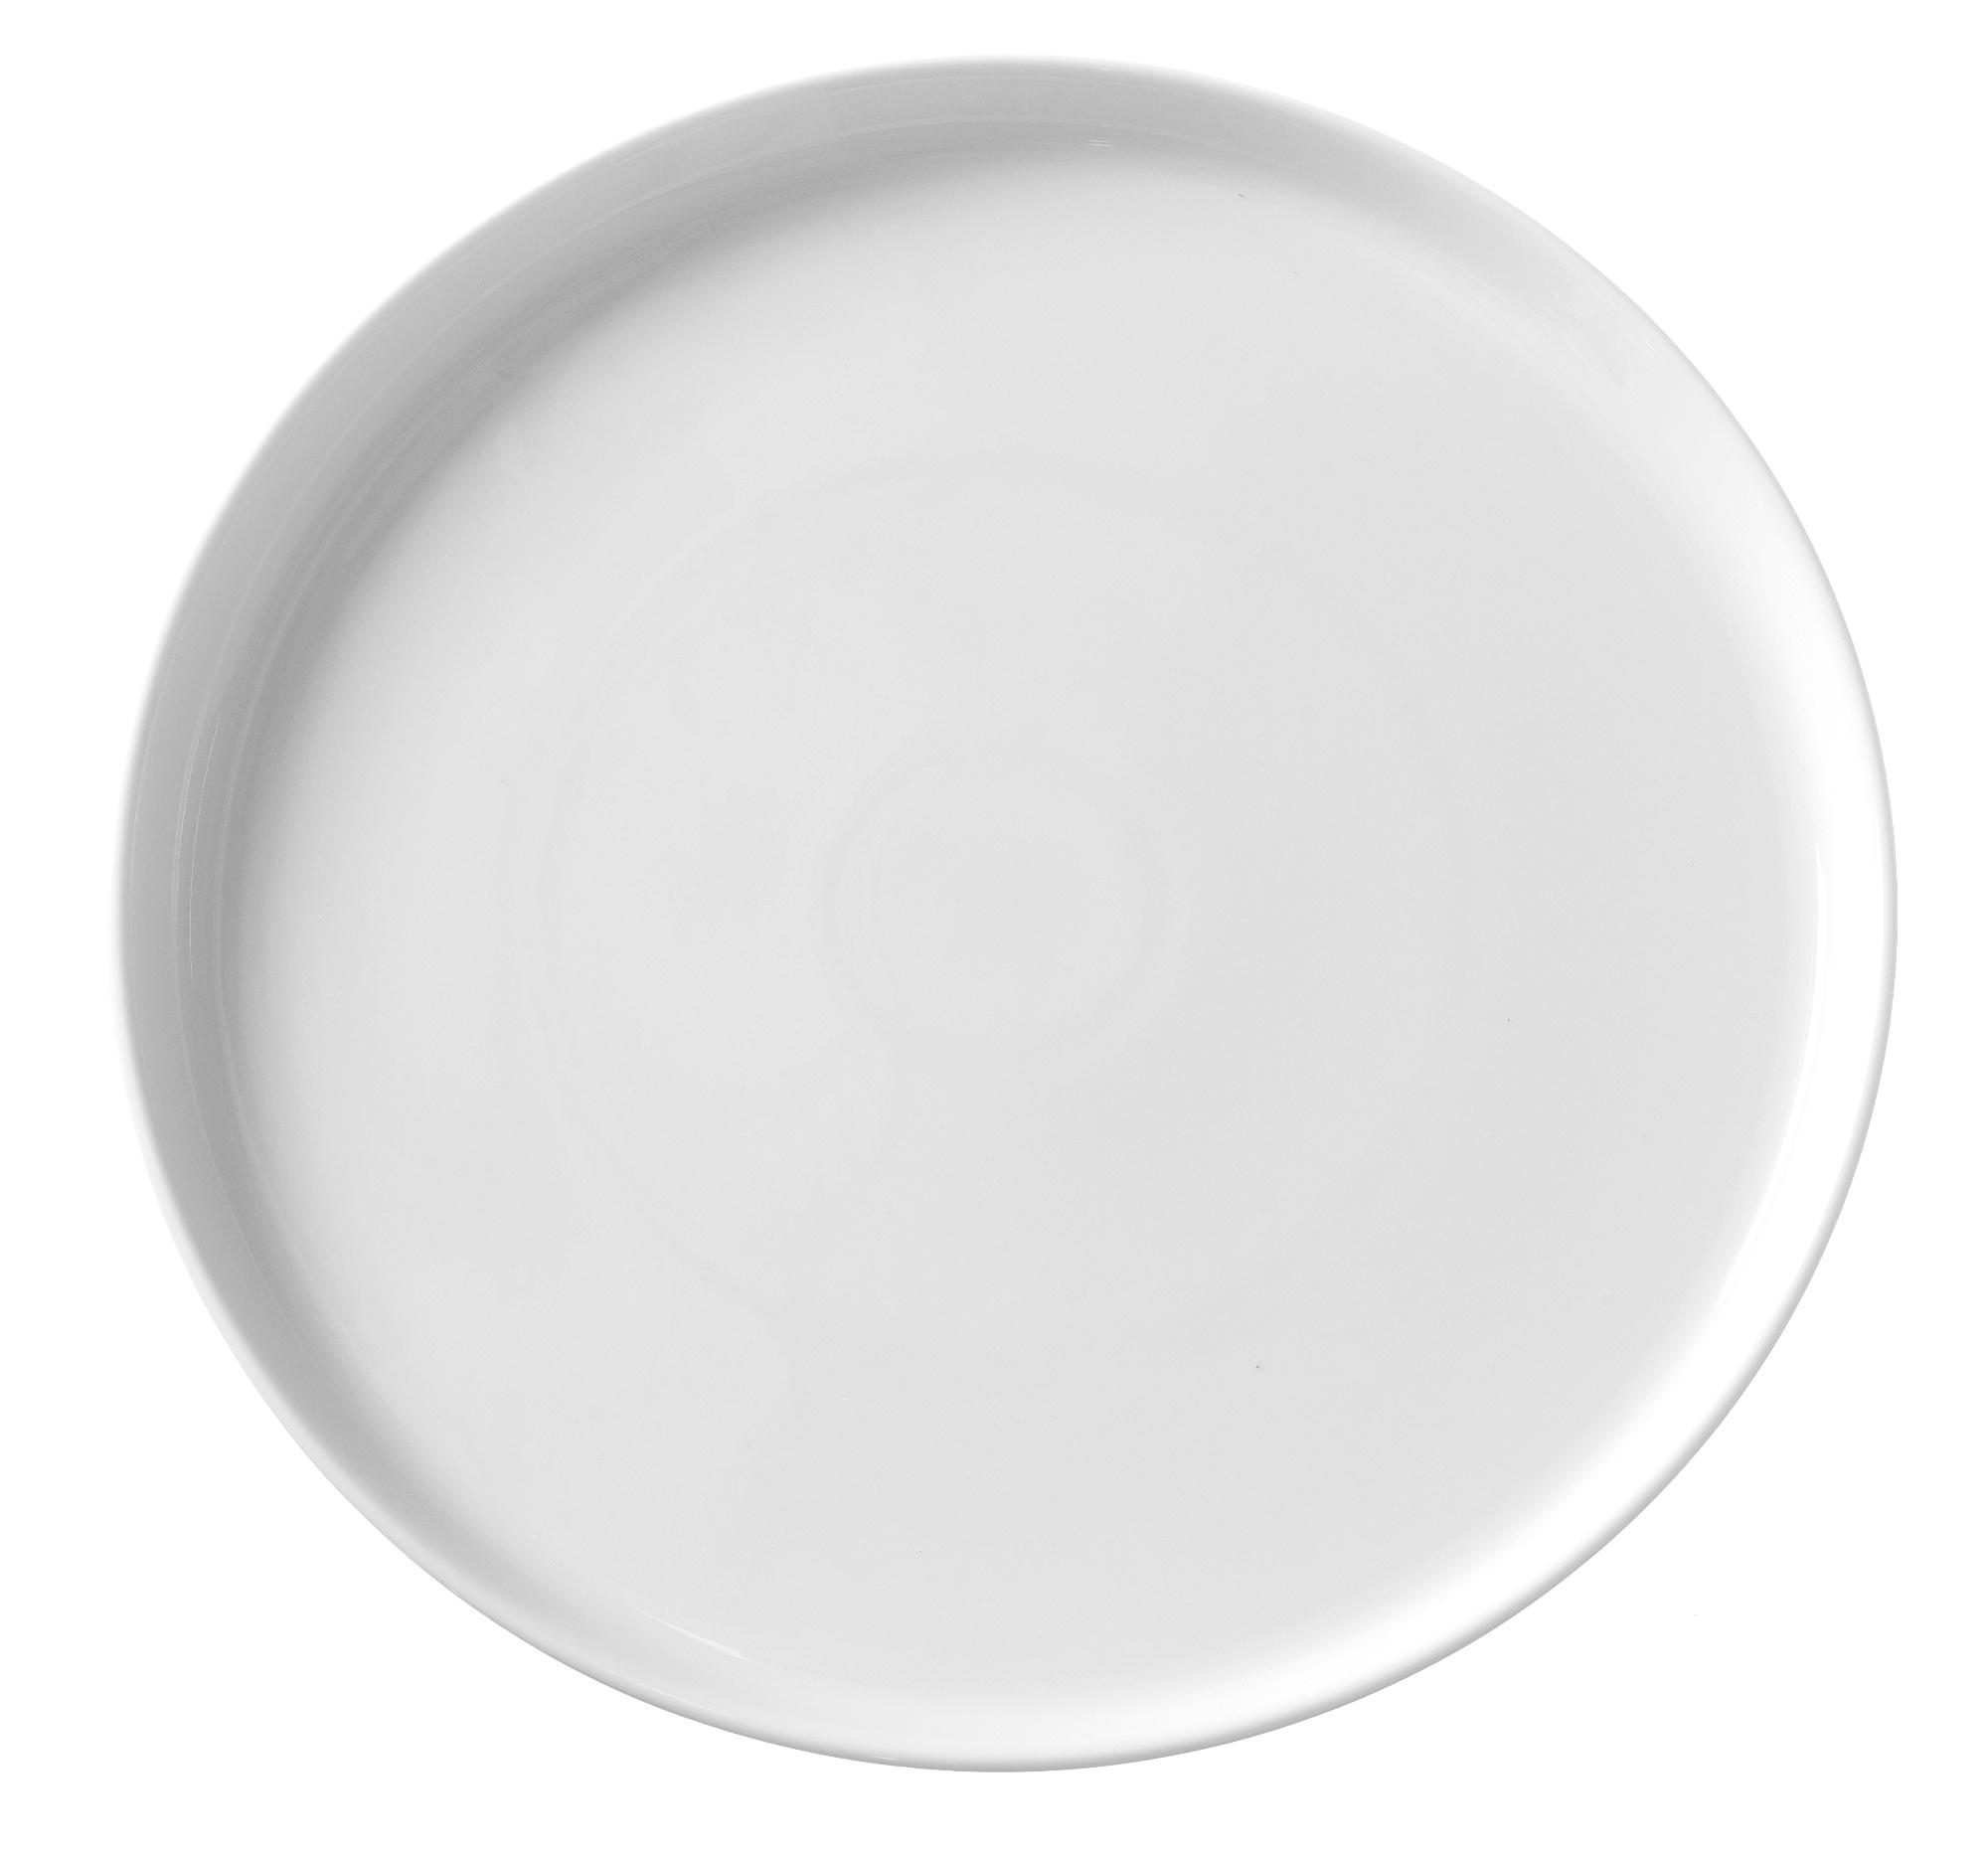 Bianco high edge plate, 190mm